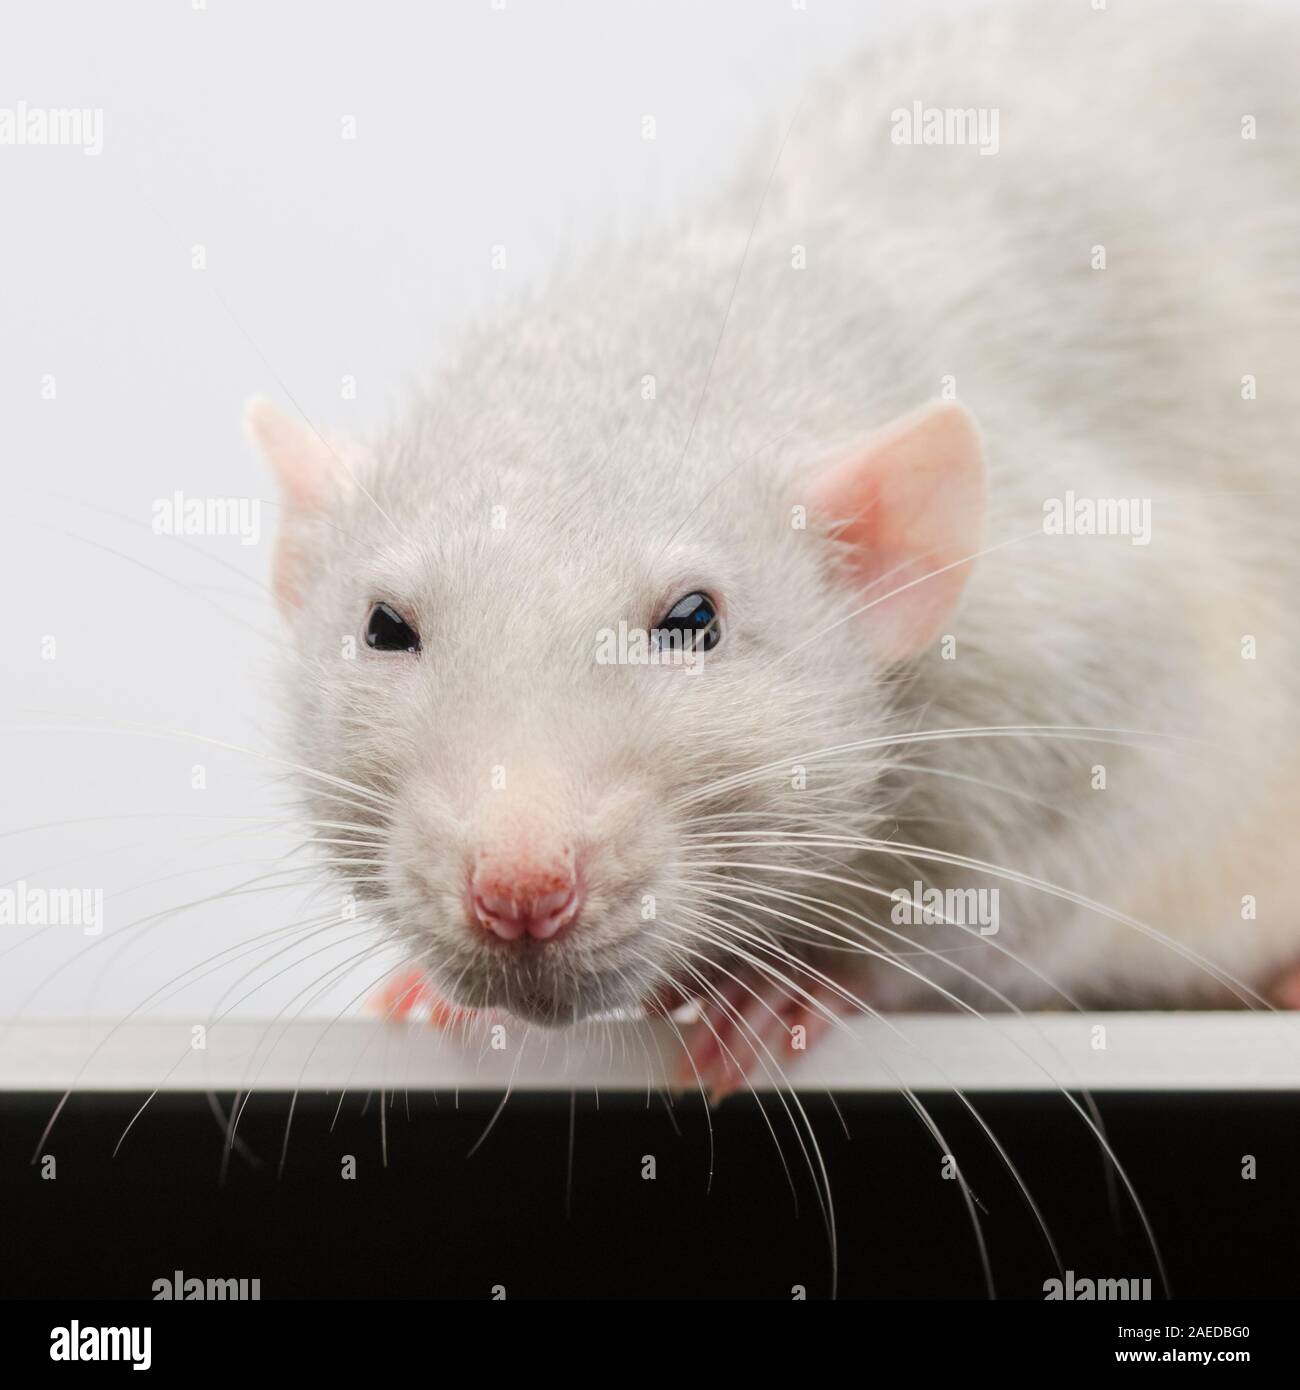 Fang von einer weißen Ratte close-up. Silber Ratte direkt auf die Linse der Kamera. Stockfoto